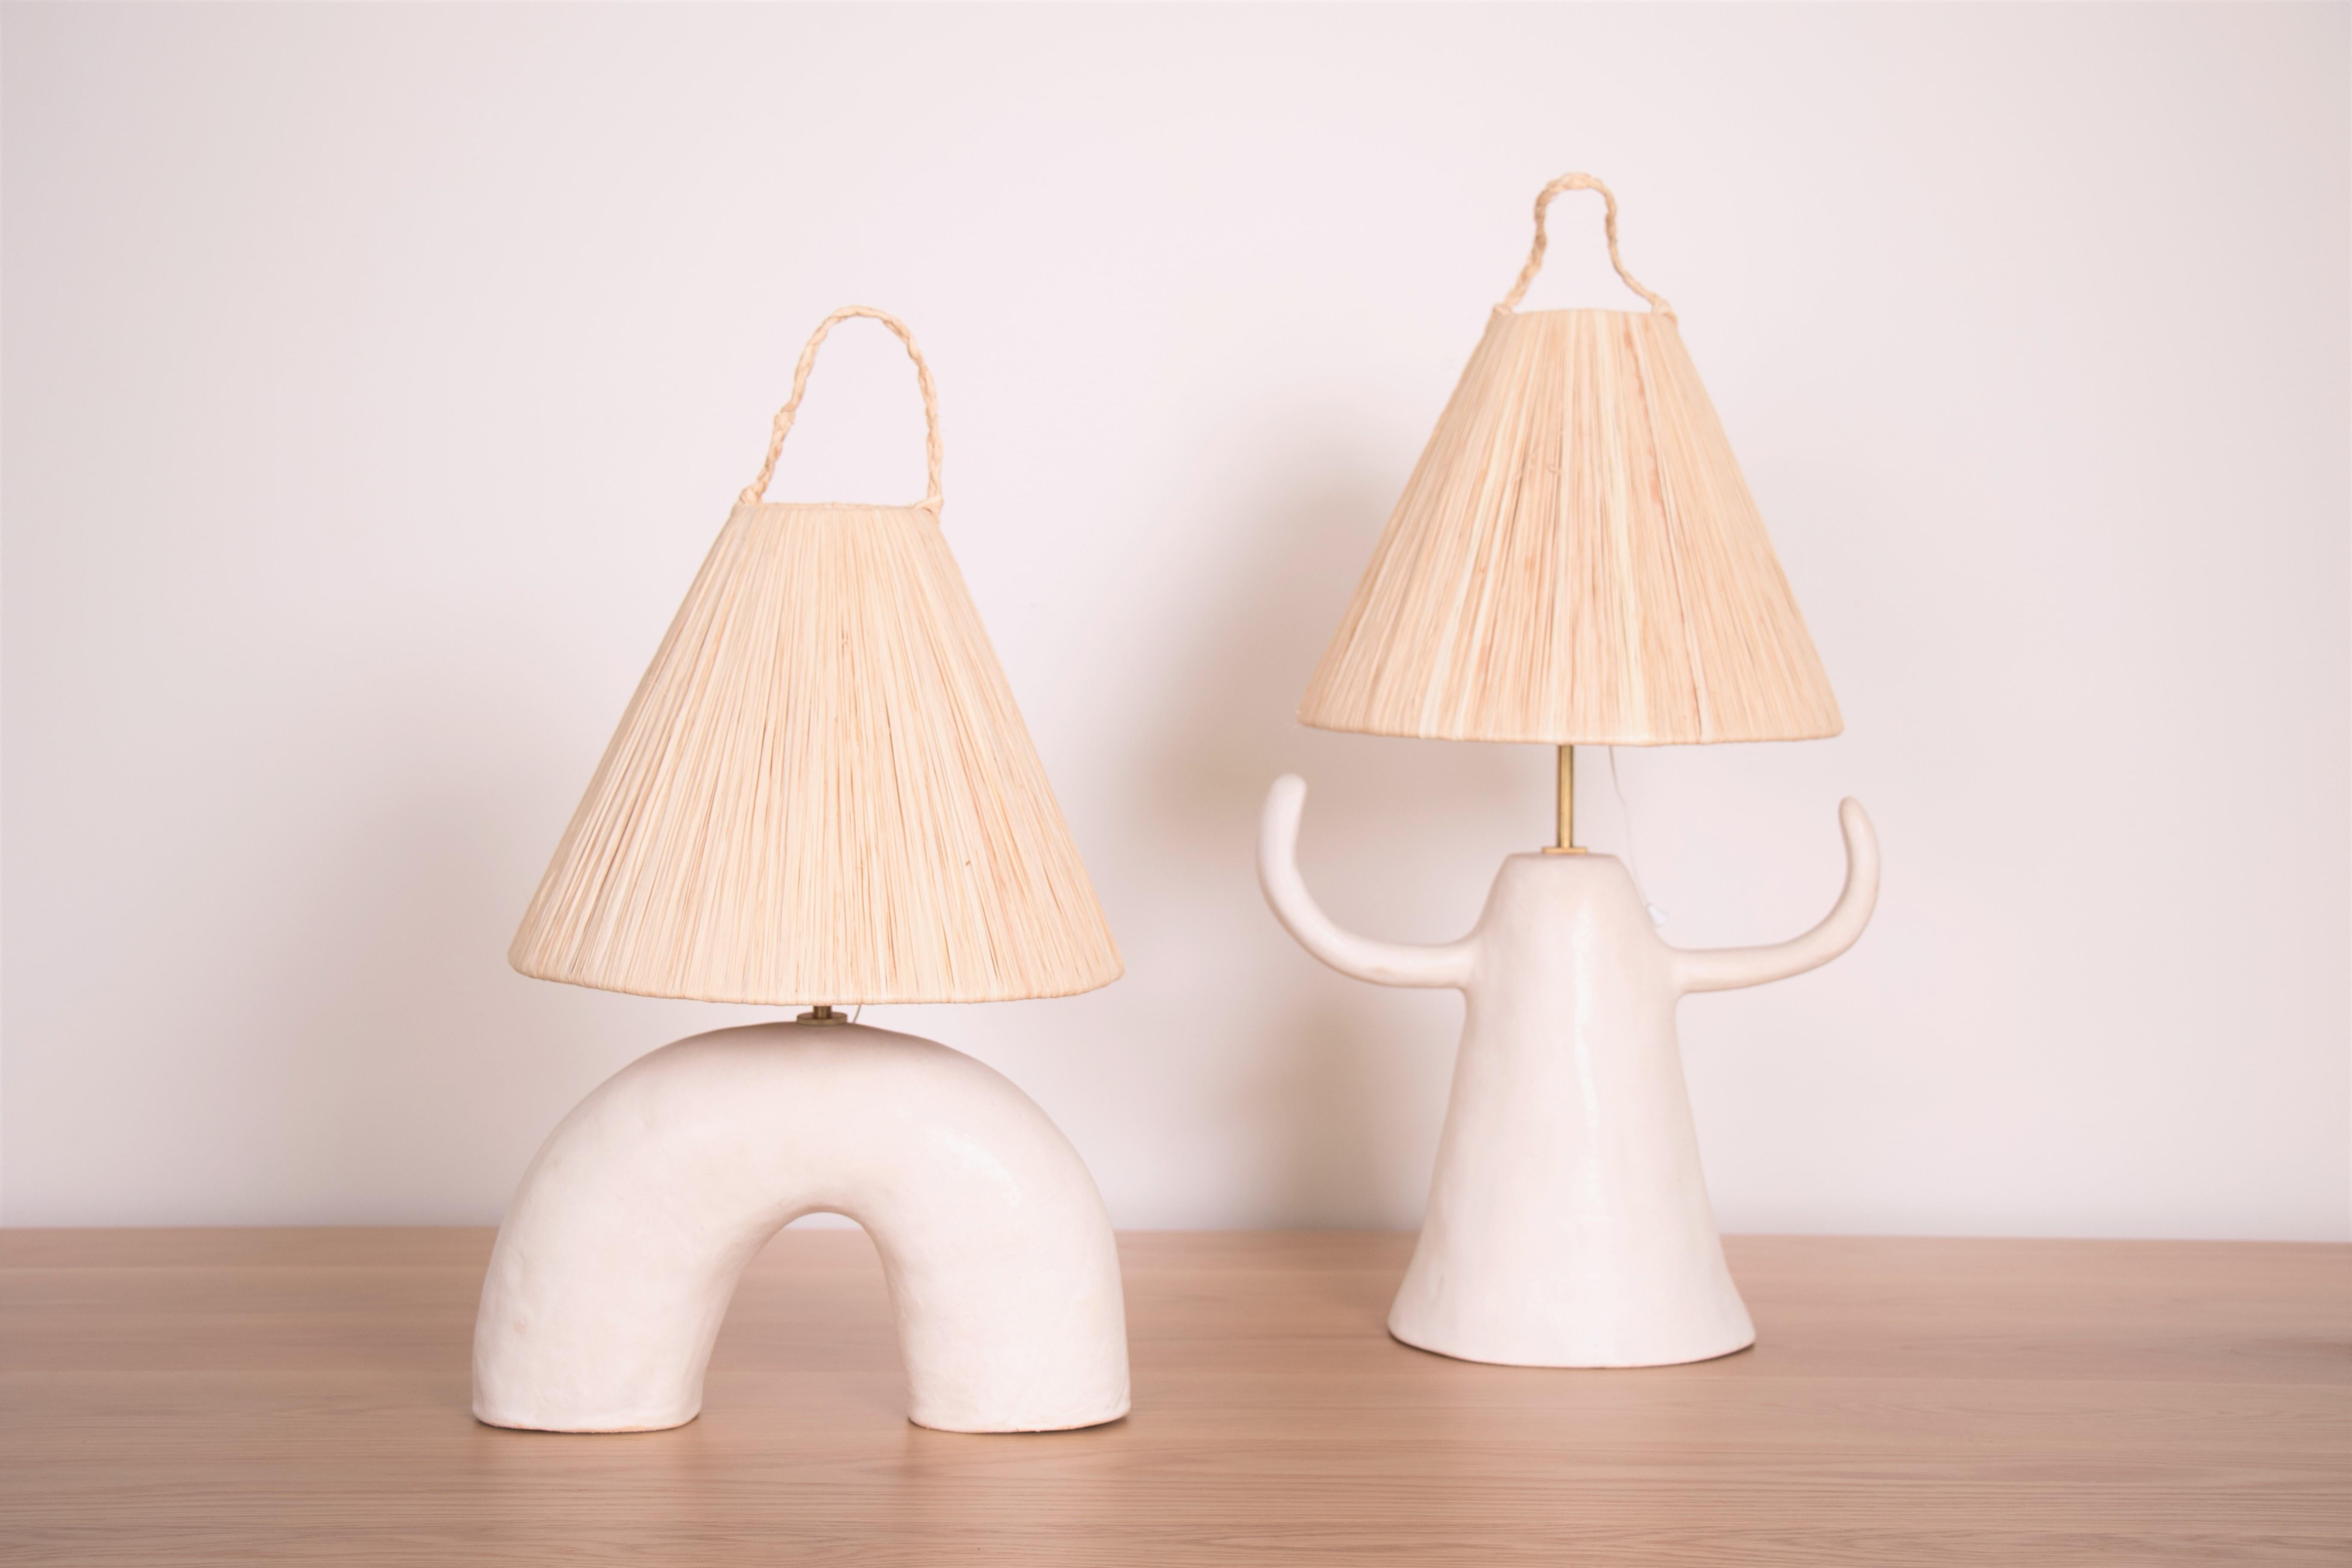 Spanish Ceramic and Raffia Lamp